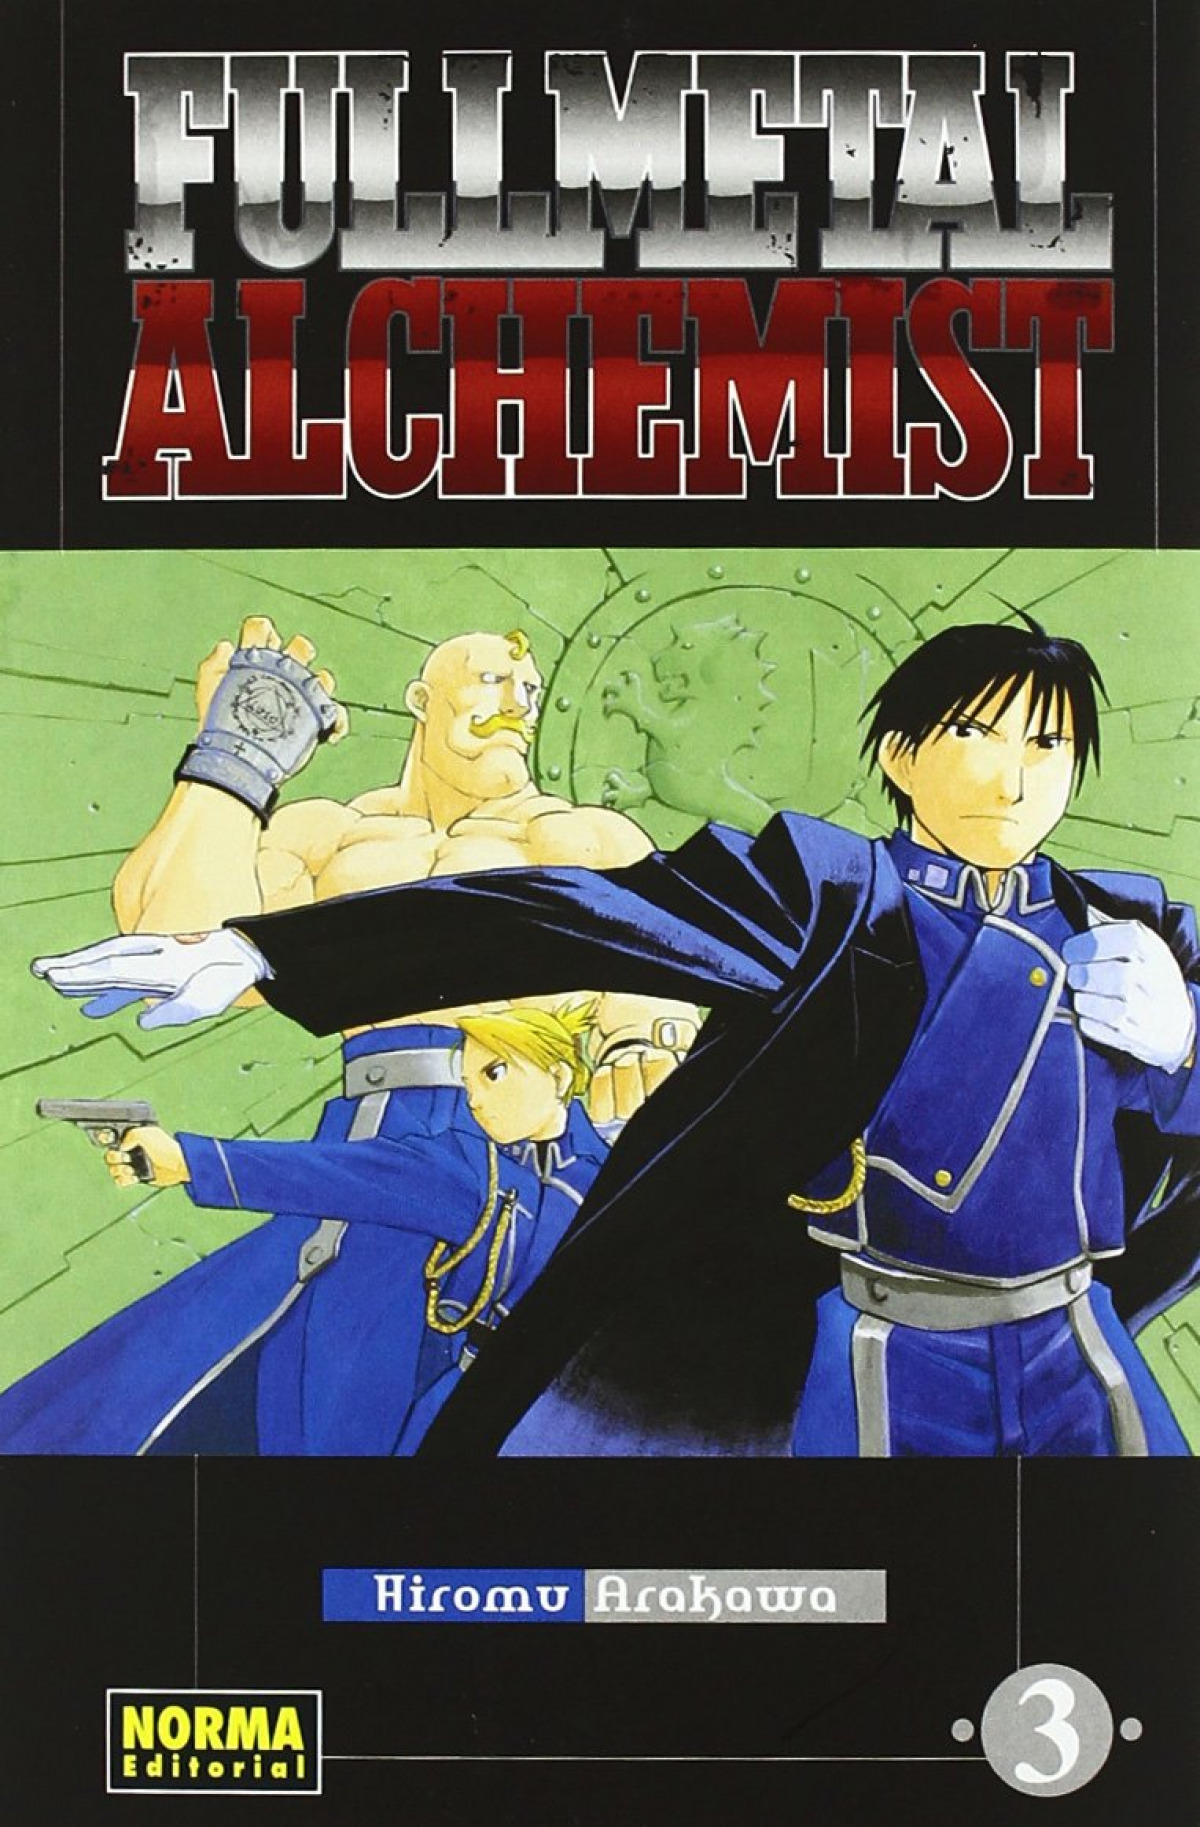 Fullmetal alchemist 3 - Arakawa, Hiromu